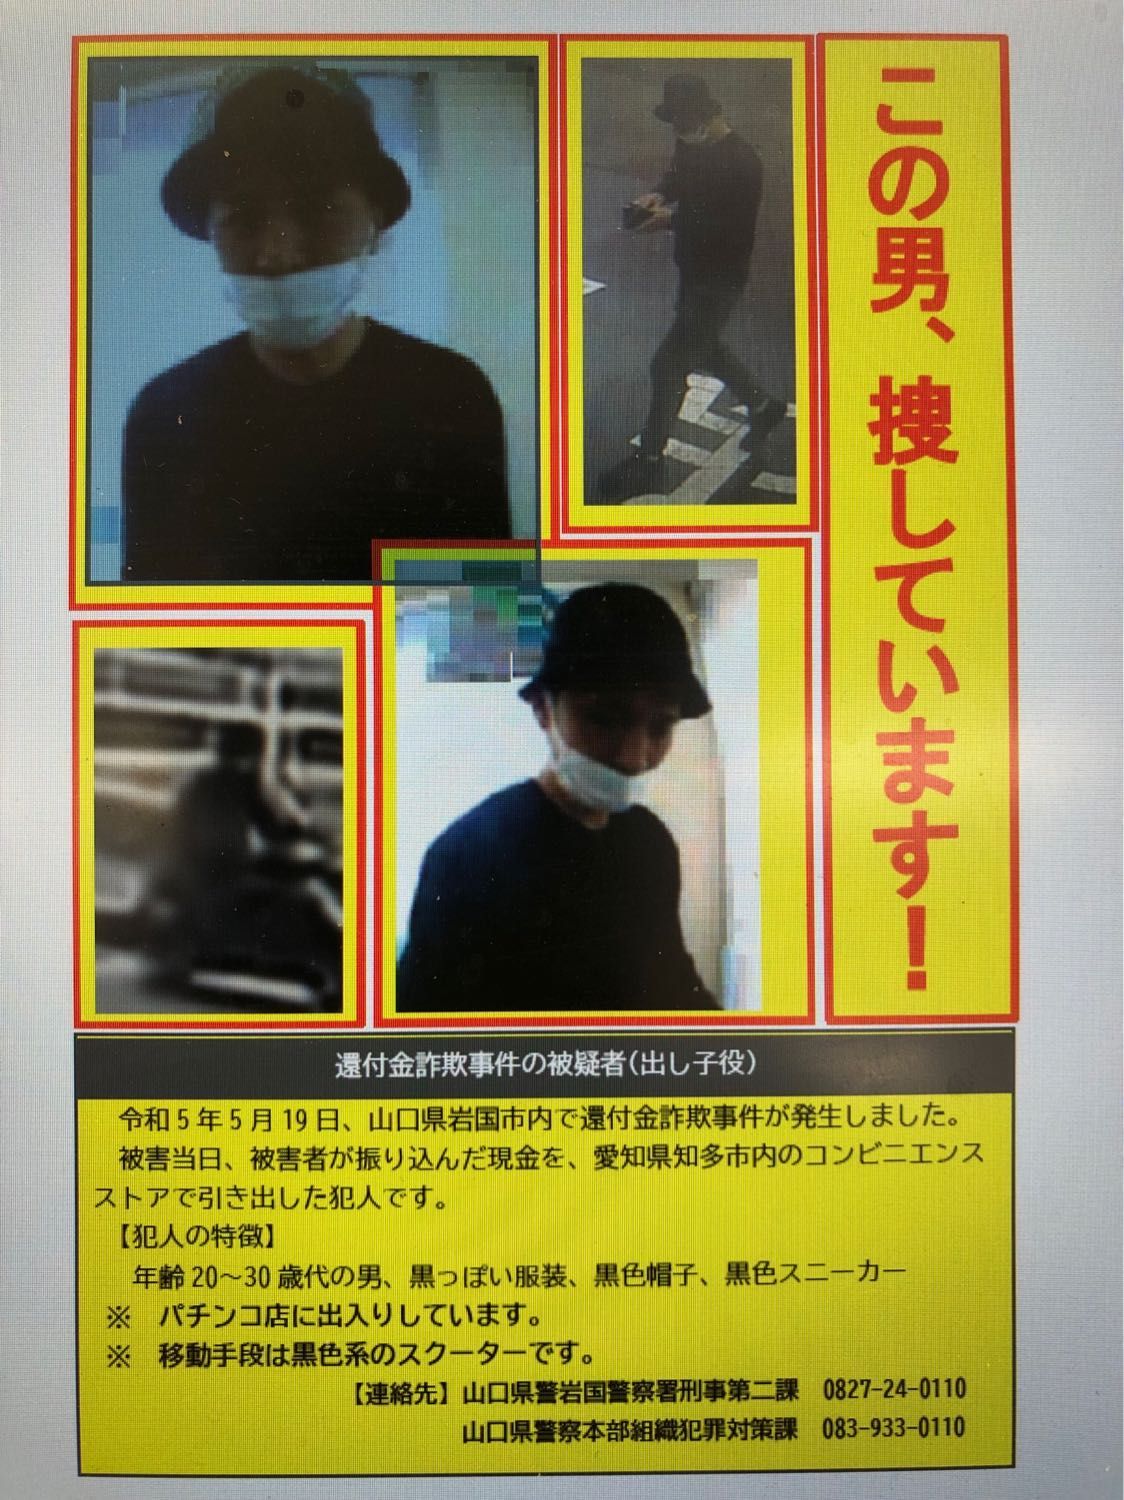 出し子の画像を公開 山口県警が５月発生のうそ電話詐欺の容疑者を公開捜査